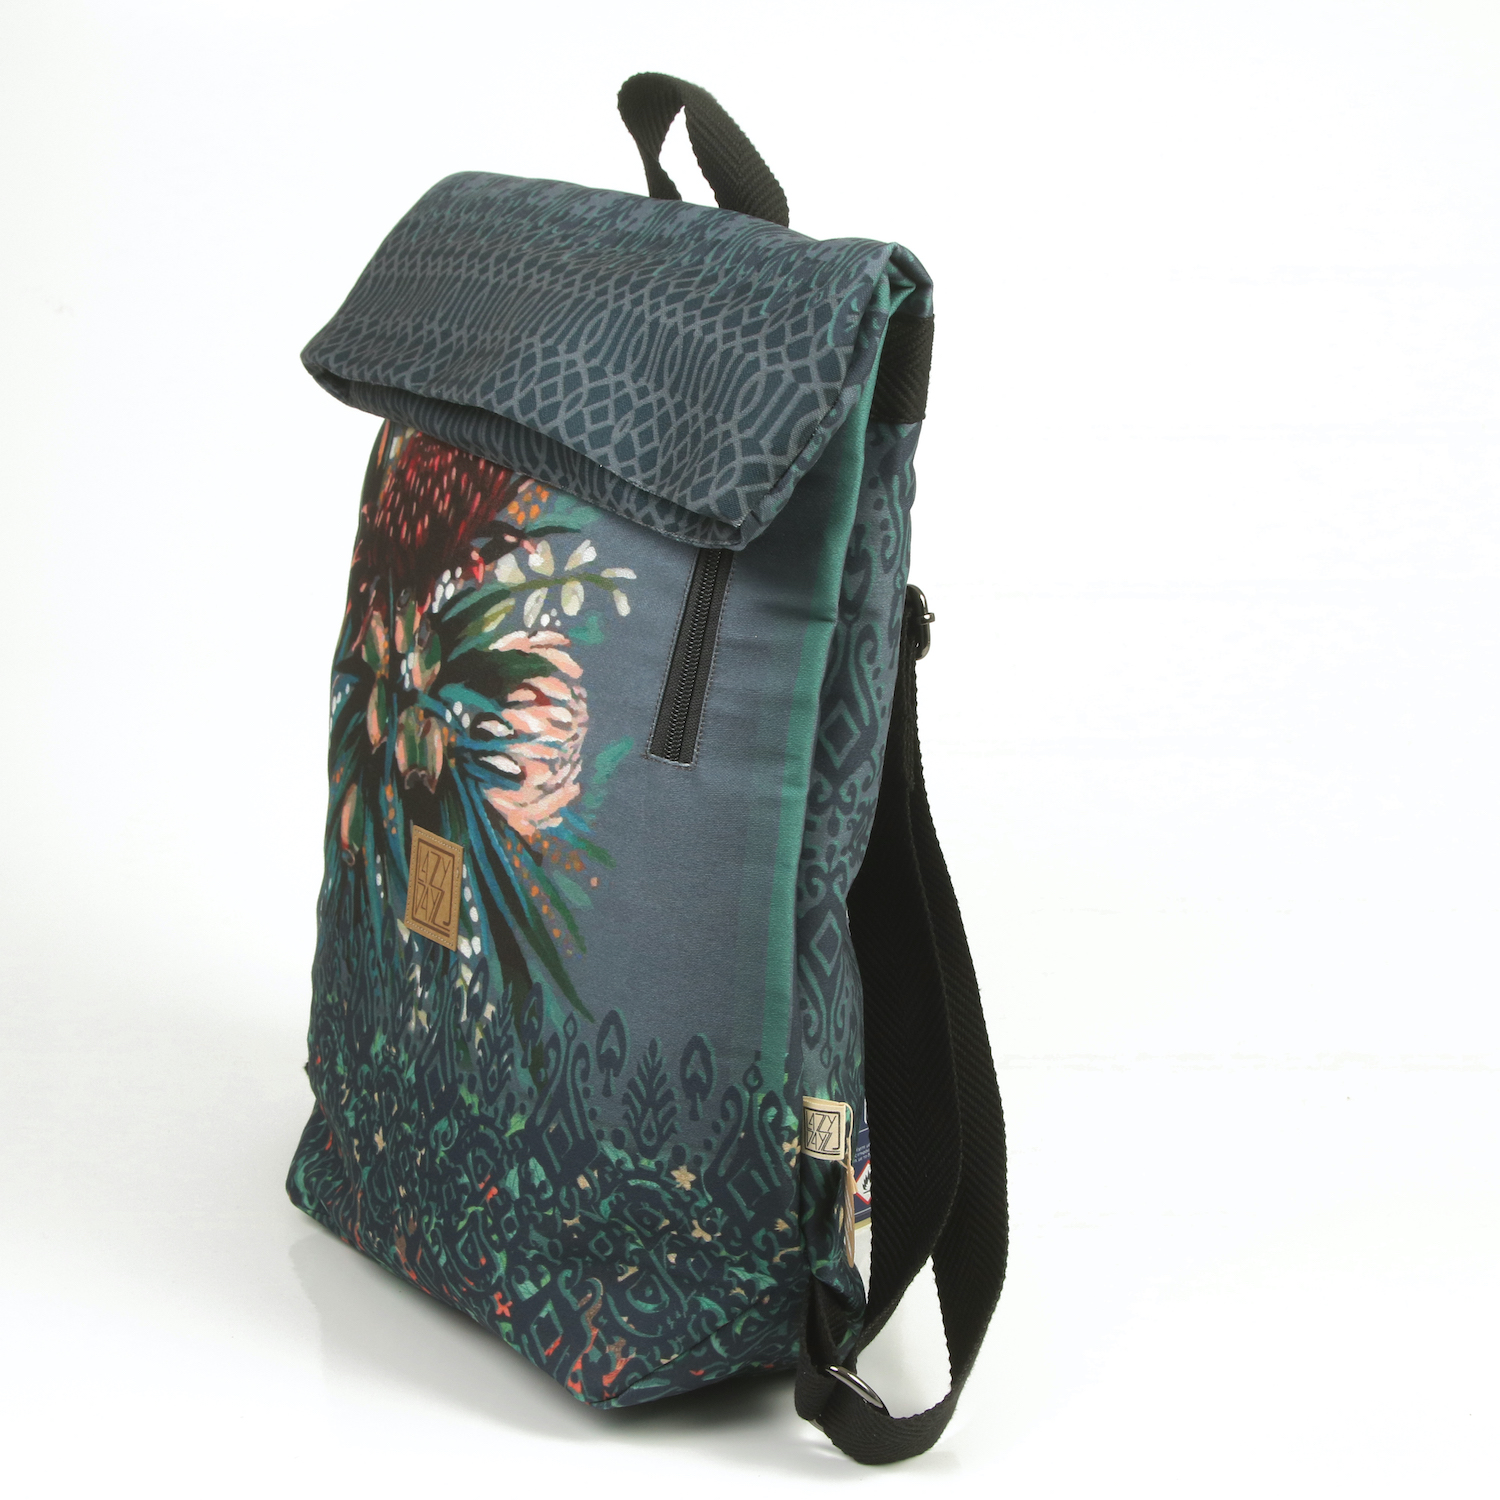 LazyDayz Designs Backpack γυναικείος σάκος πλάτης χειροποίητος bb0803b